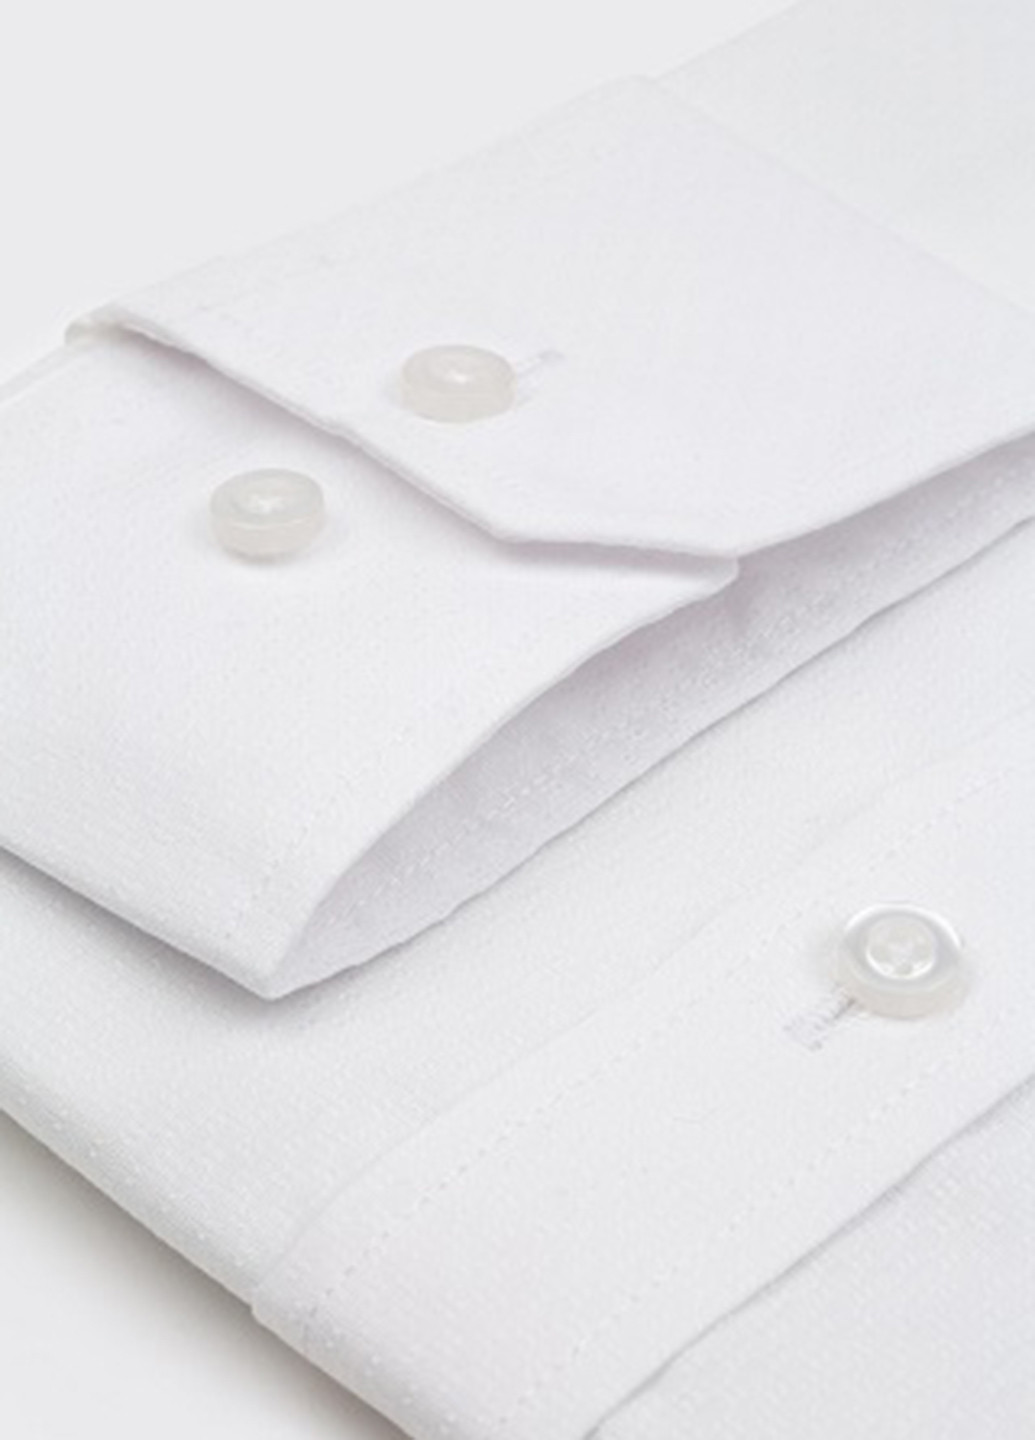 Белая классическая рубашка однотонная Pako Lorente с длинным рукавом